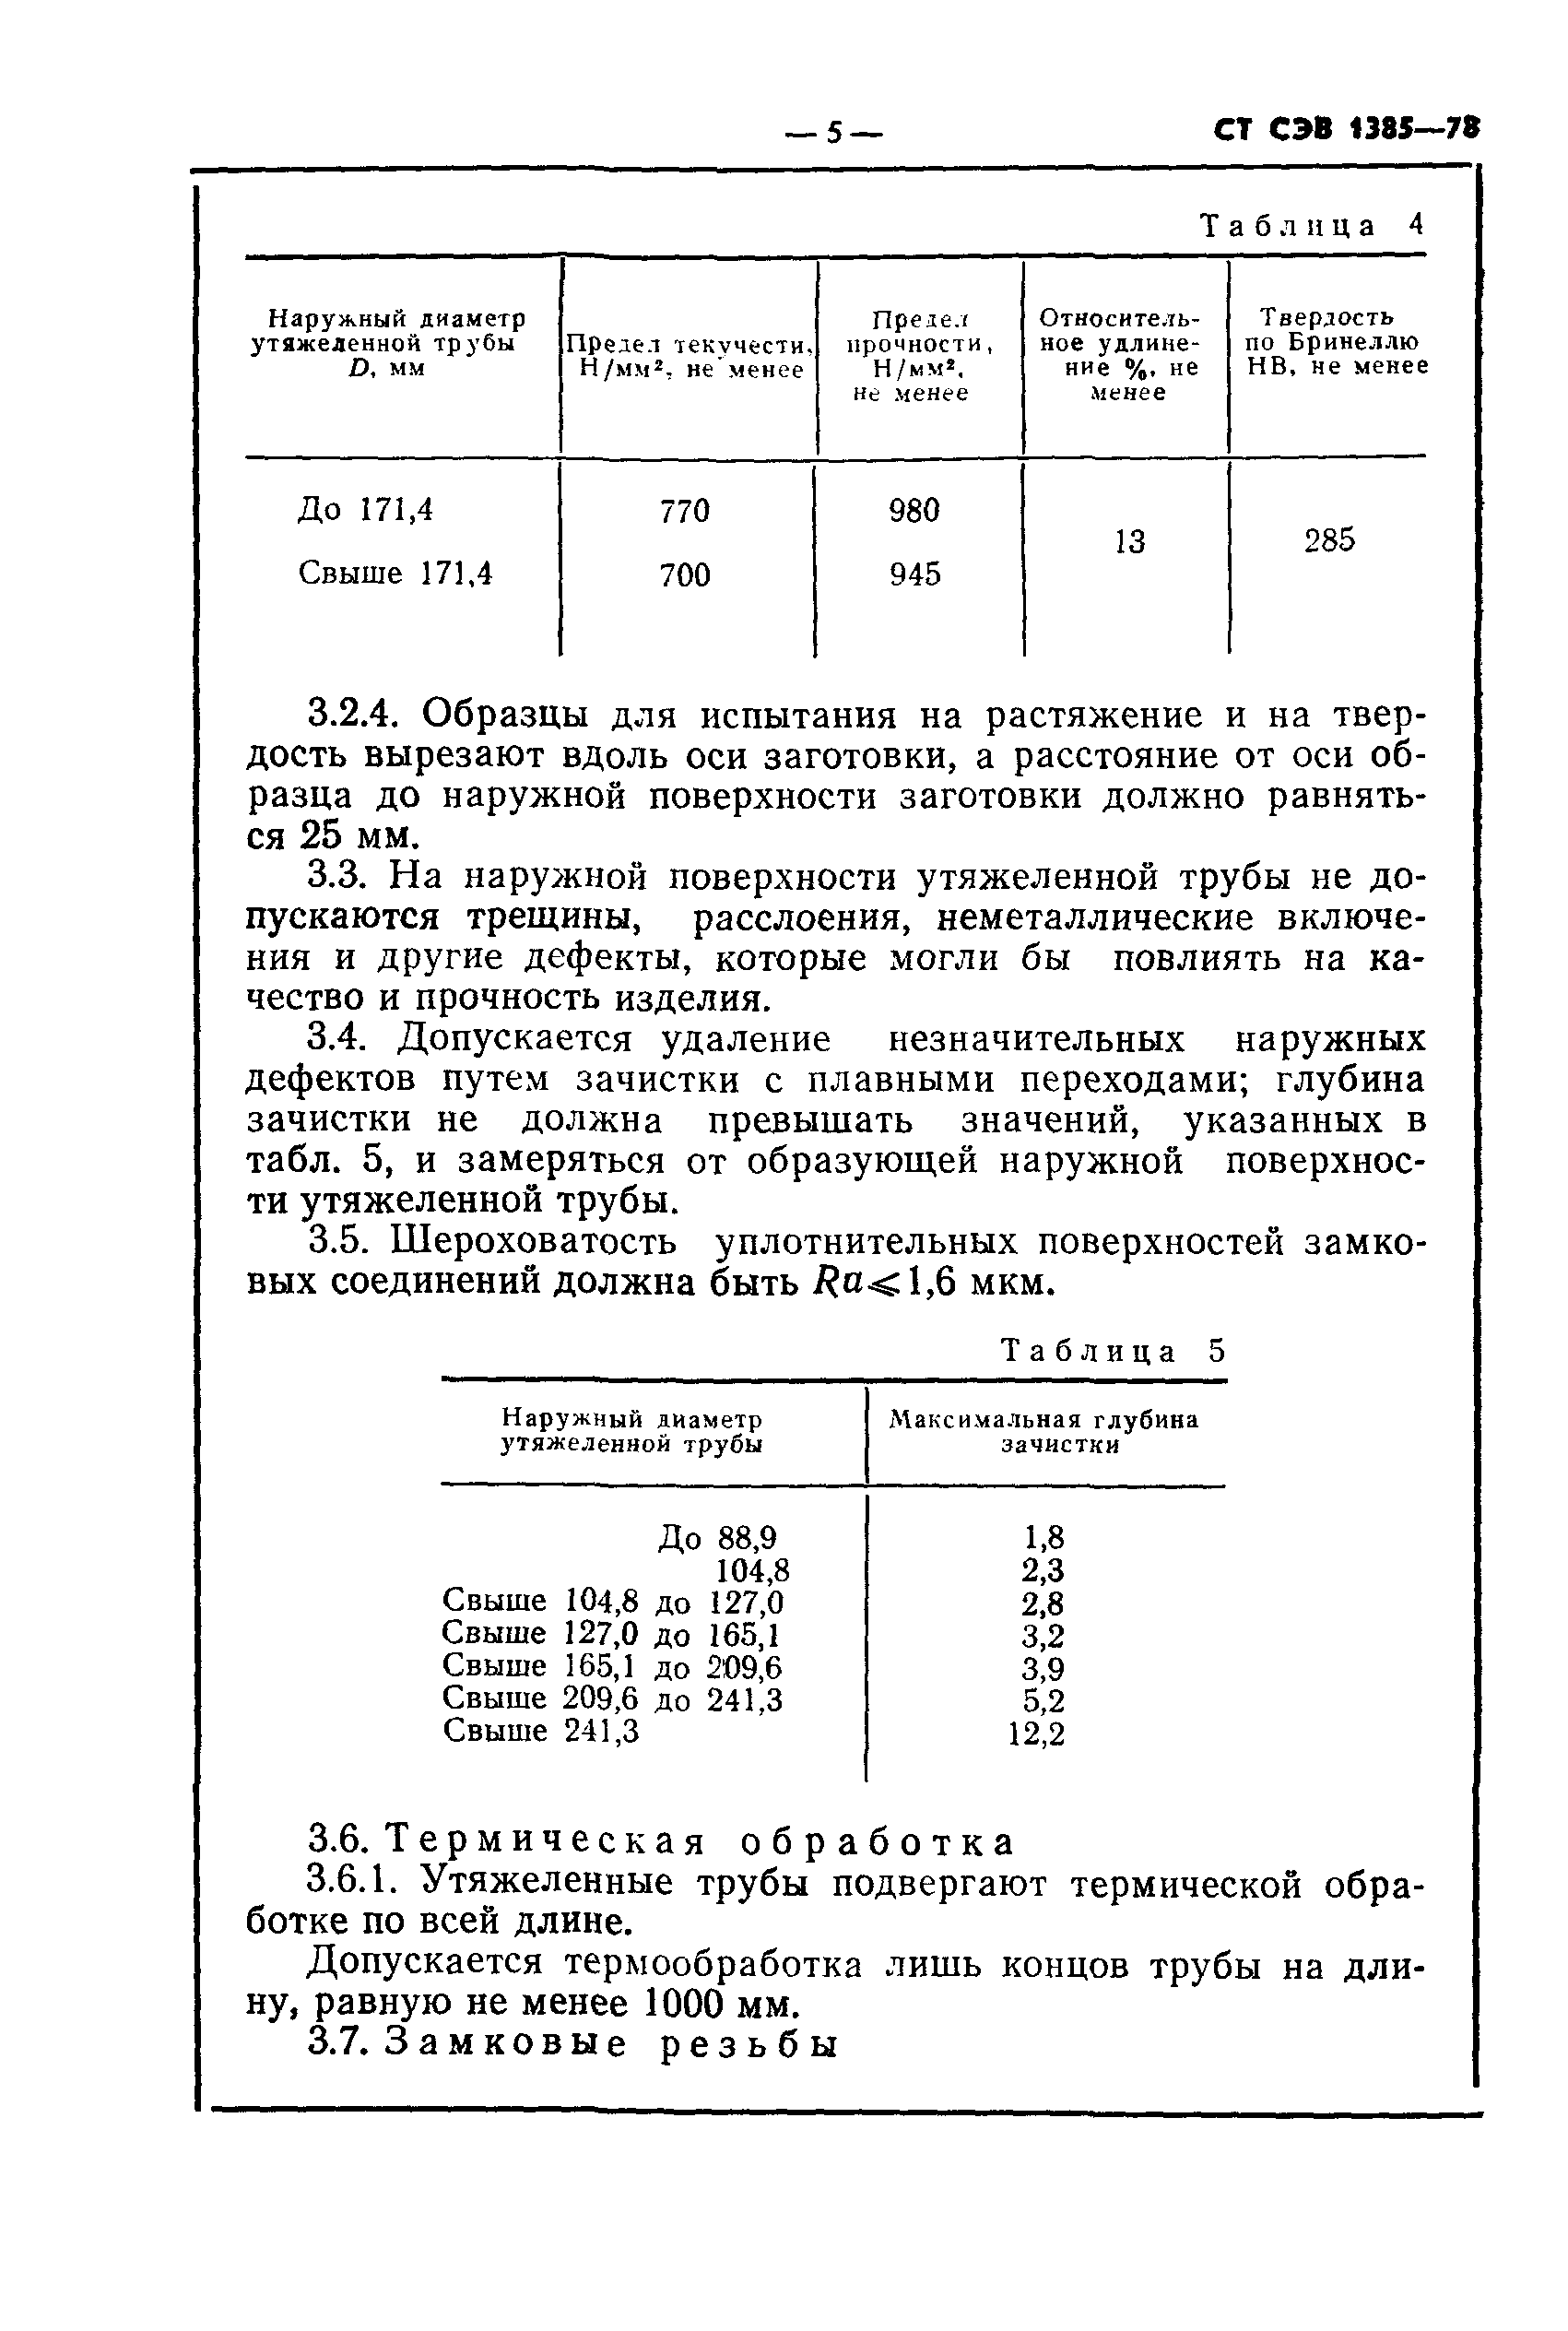 СТ СЭВ 1385-78